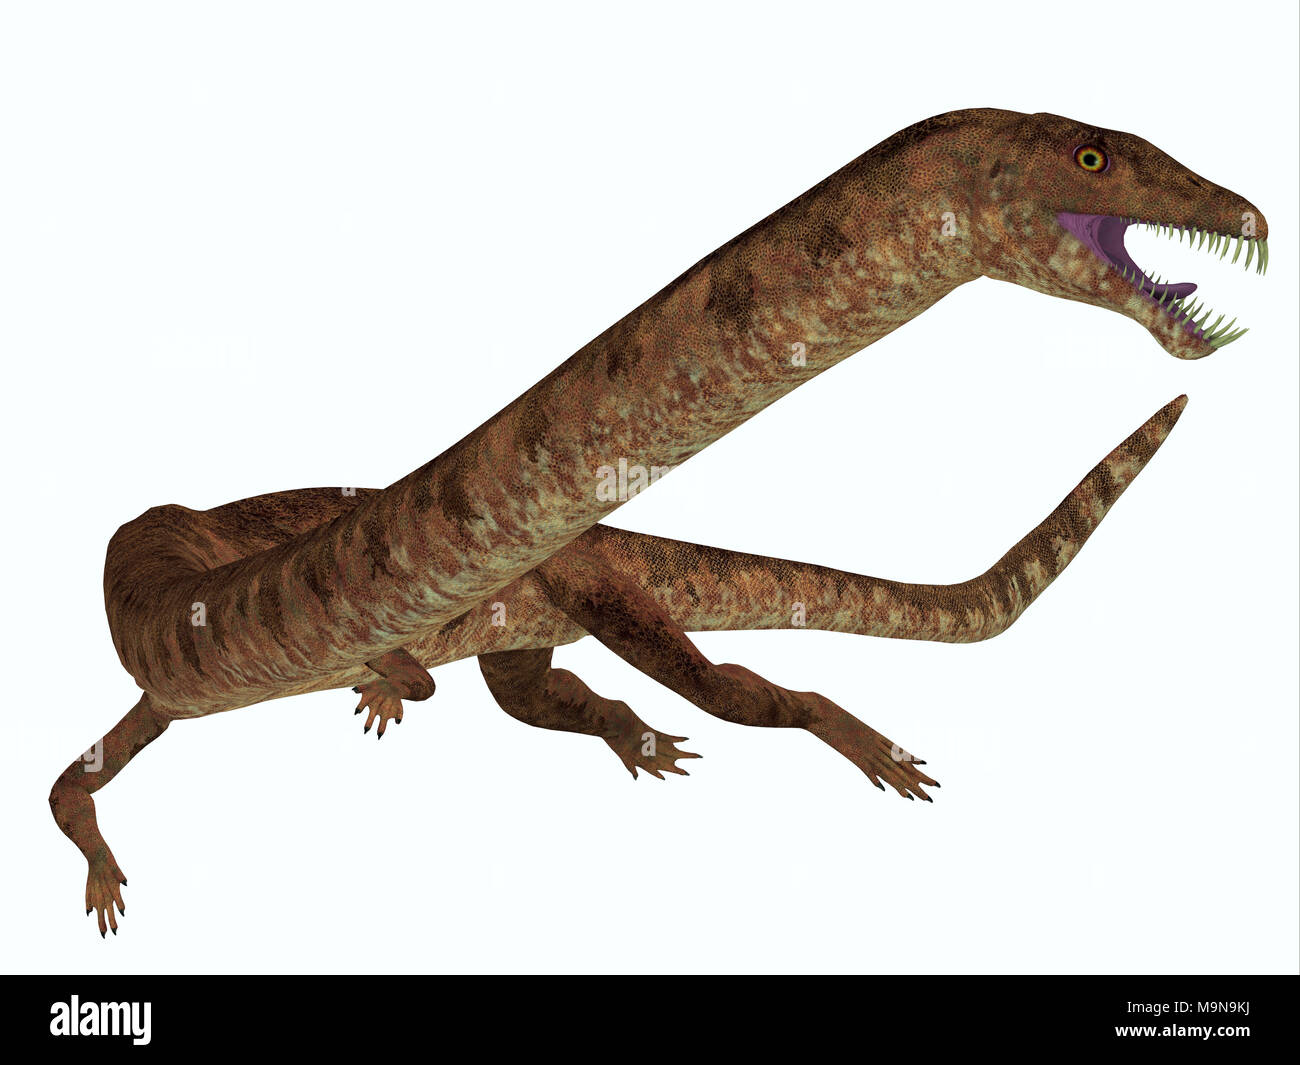 Dinosaure Tanystropheus sur blanc - Tanystropheus était un reptile prédateur marin qui vivait dans les mers d'Europe et du Moyen-Orient. Banque D'Images